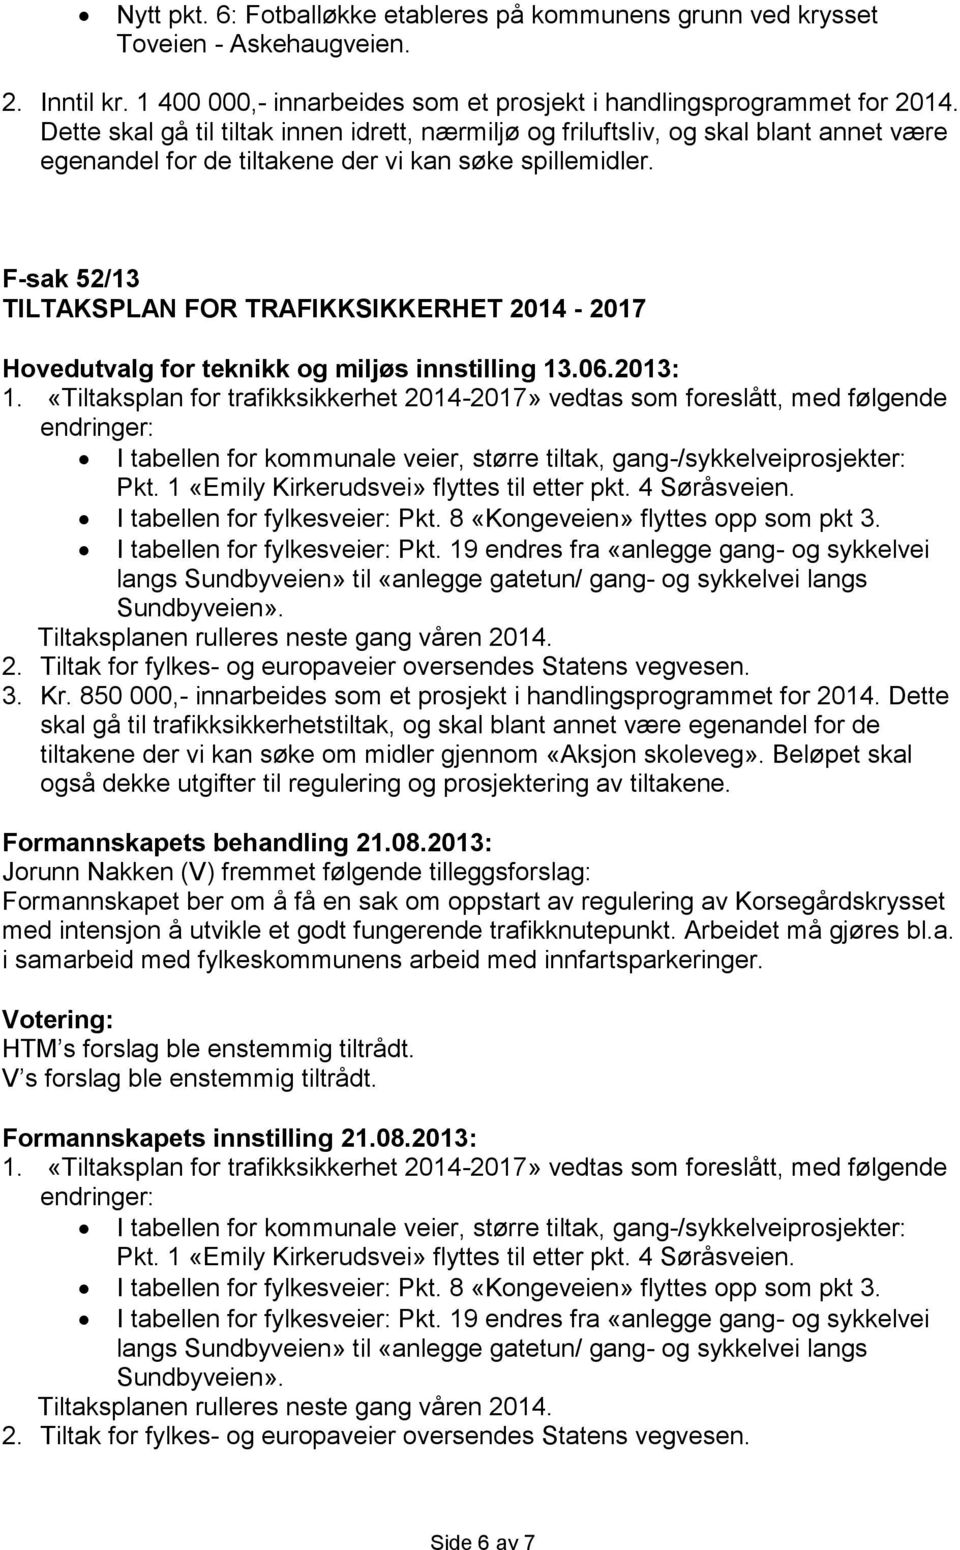 F-sak 52/13 TILTAKSPLAN FOR TRAFIKKSIKKERHET 2014-2017 Hovedutvalg for teknikk og miljøs innstilling 13.06.2013: 1.